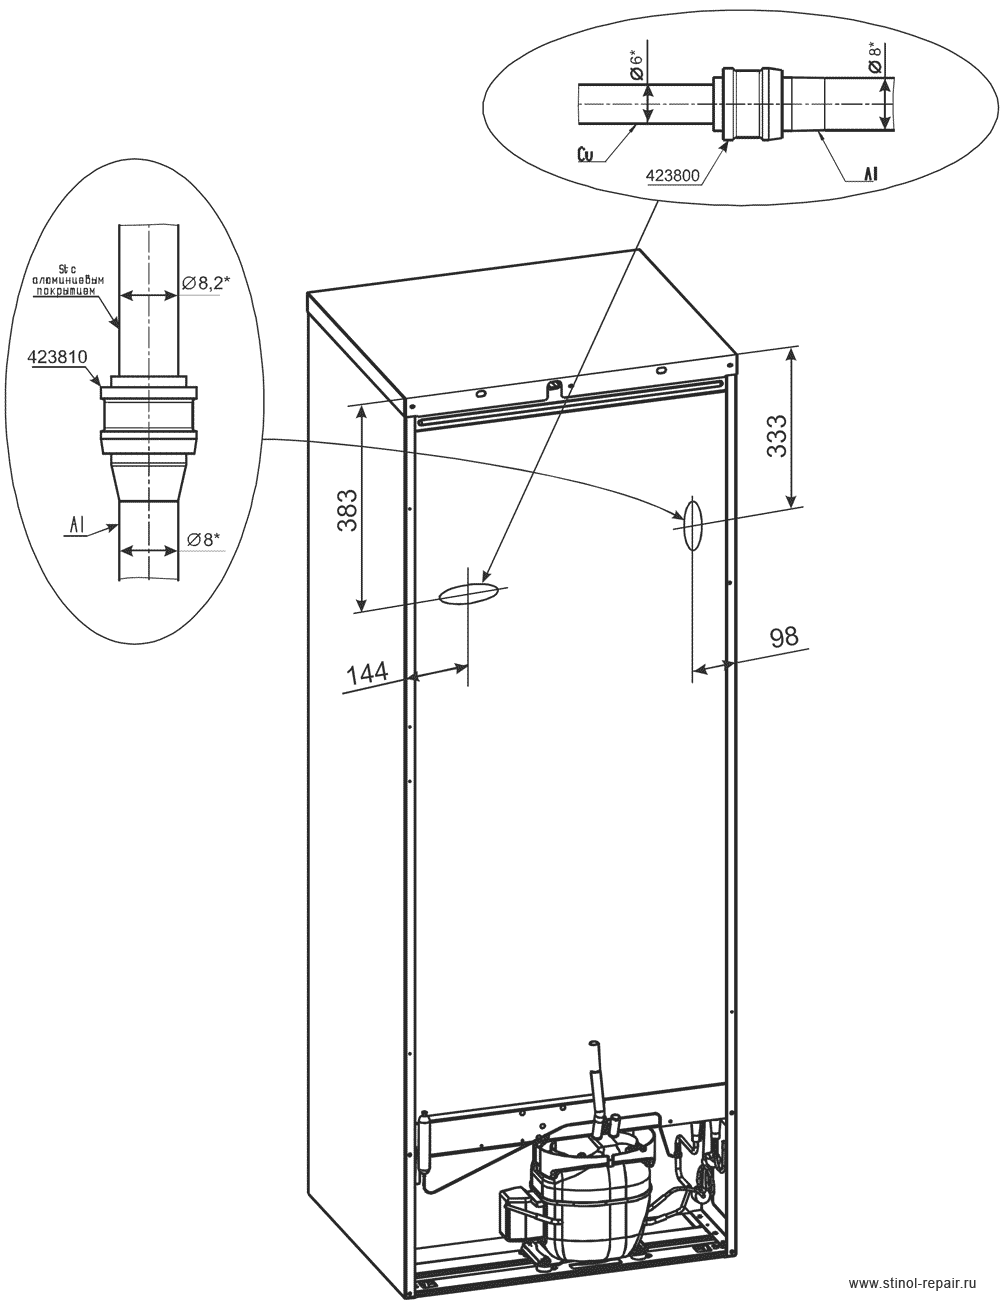 Расположение локринговых соединений холодильника Стинол-232Q - первоначальный вариант.